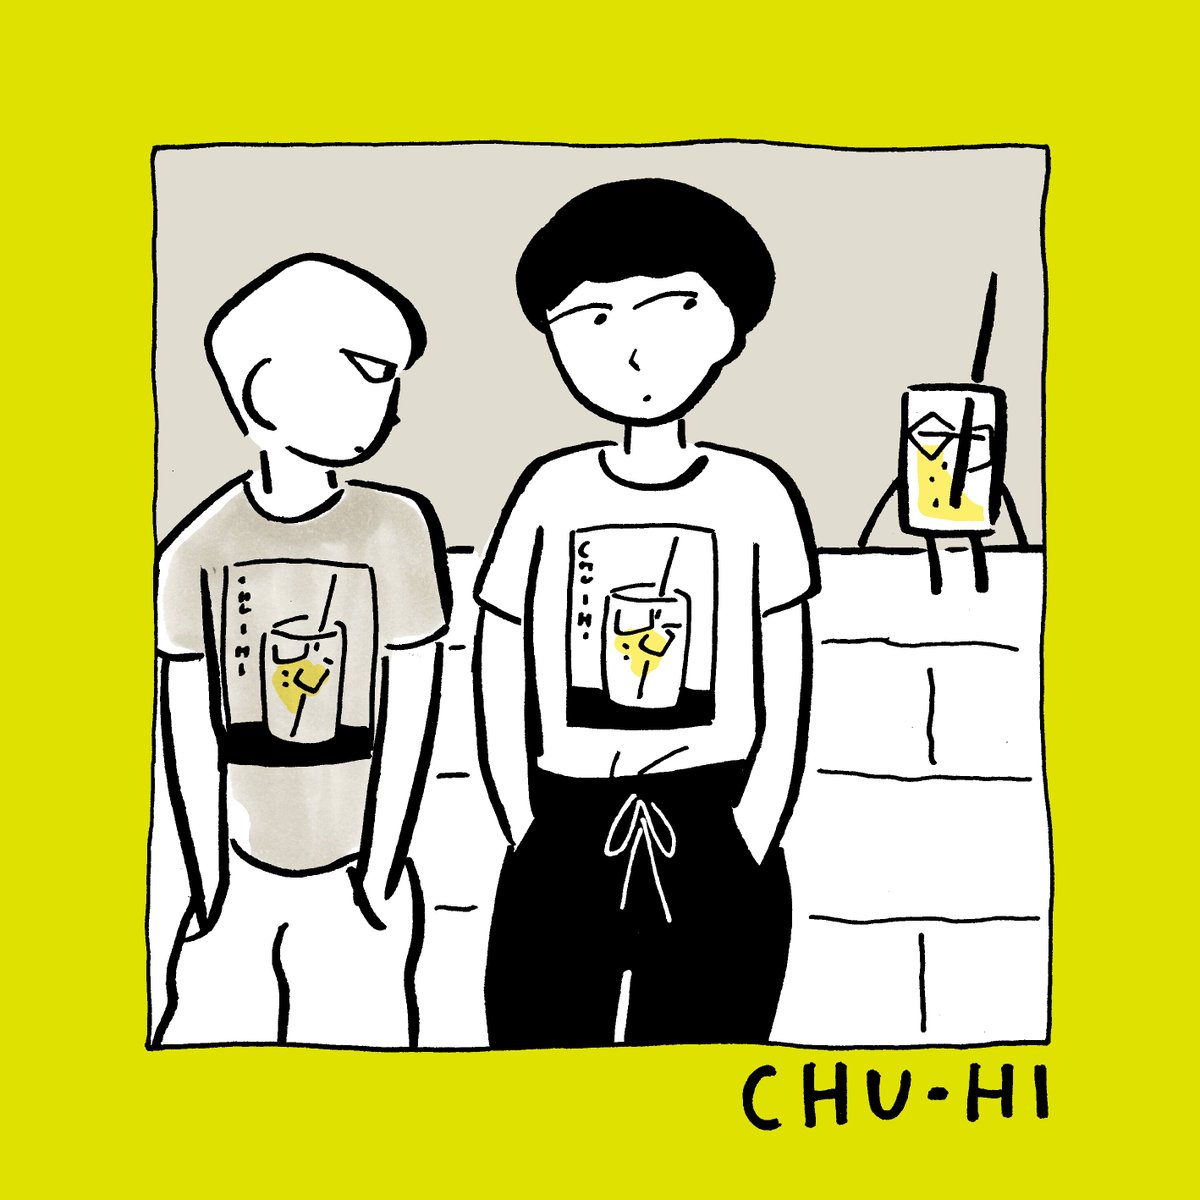 CHU-HITシャツ通販始めました。
レモン色です。
https://t.co/ue09SQmQGC 